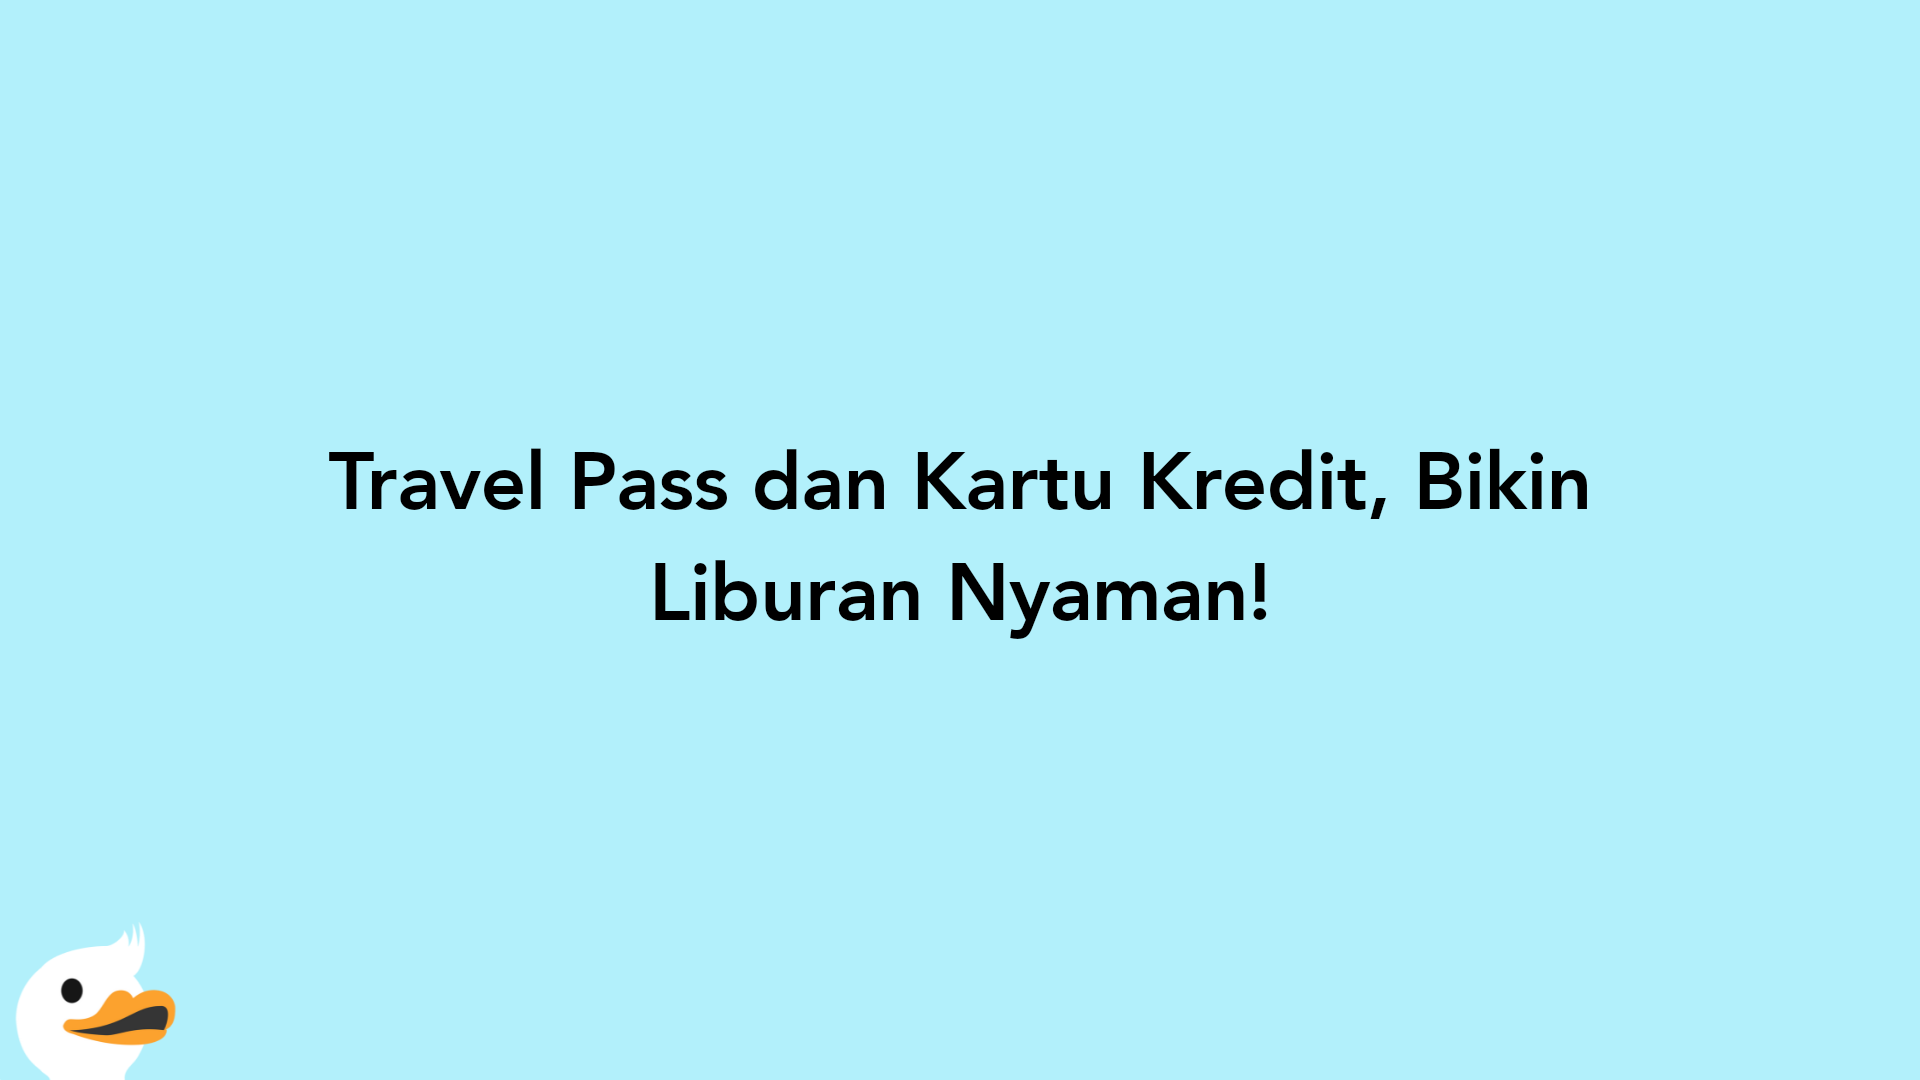 Travel Pass dan Kartu Kredit, Bikin Liburan Nyaman!